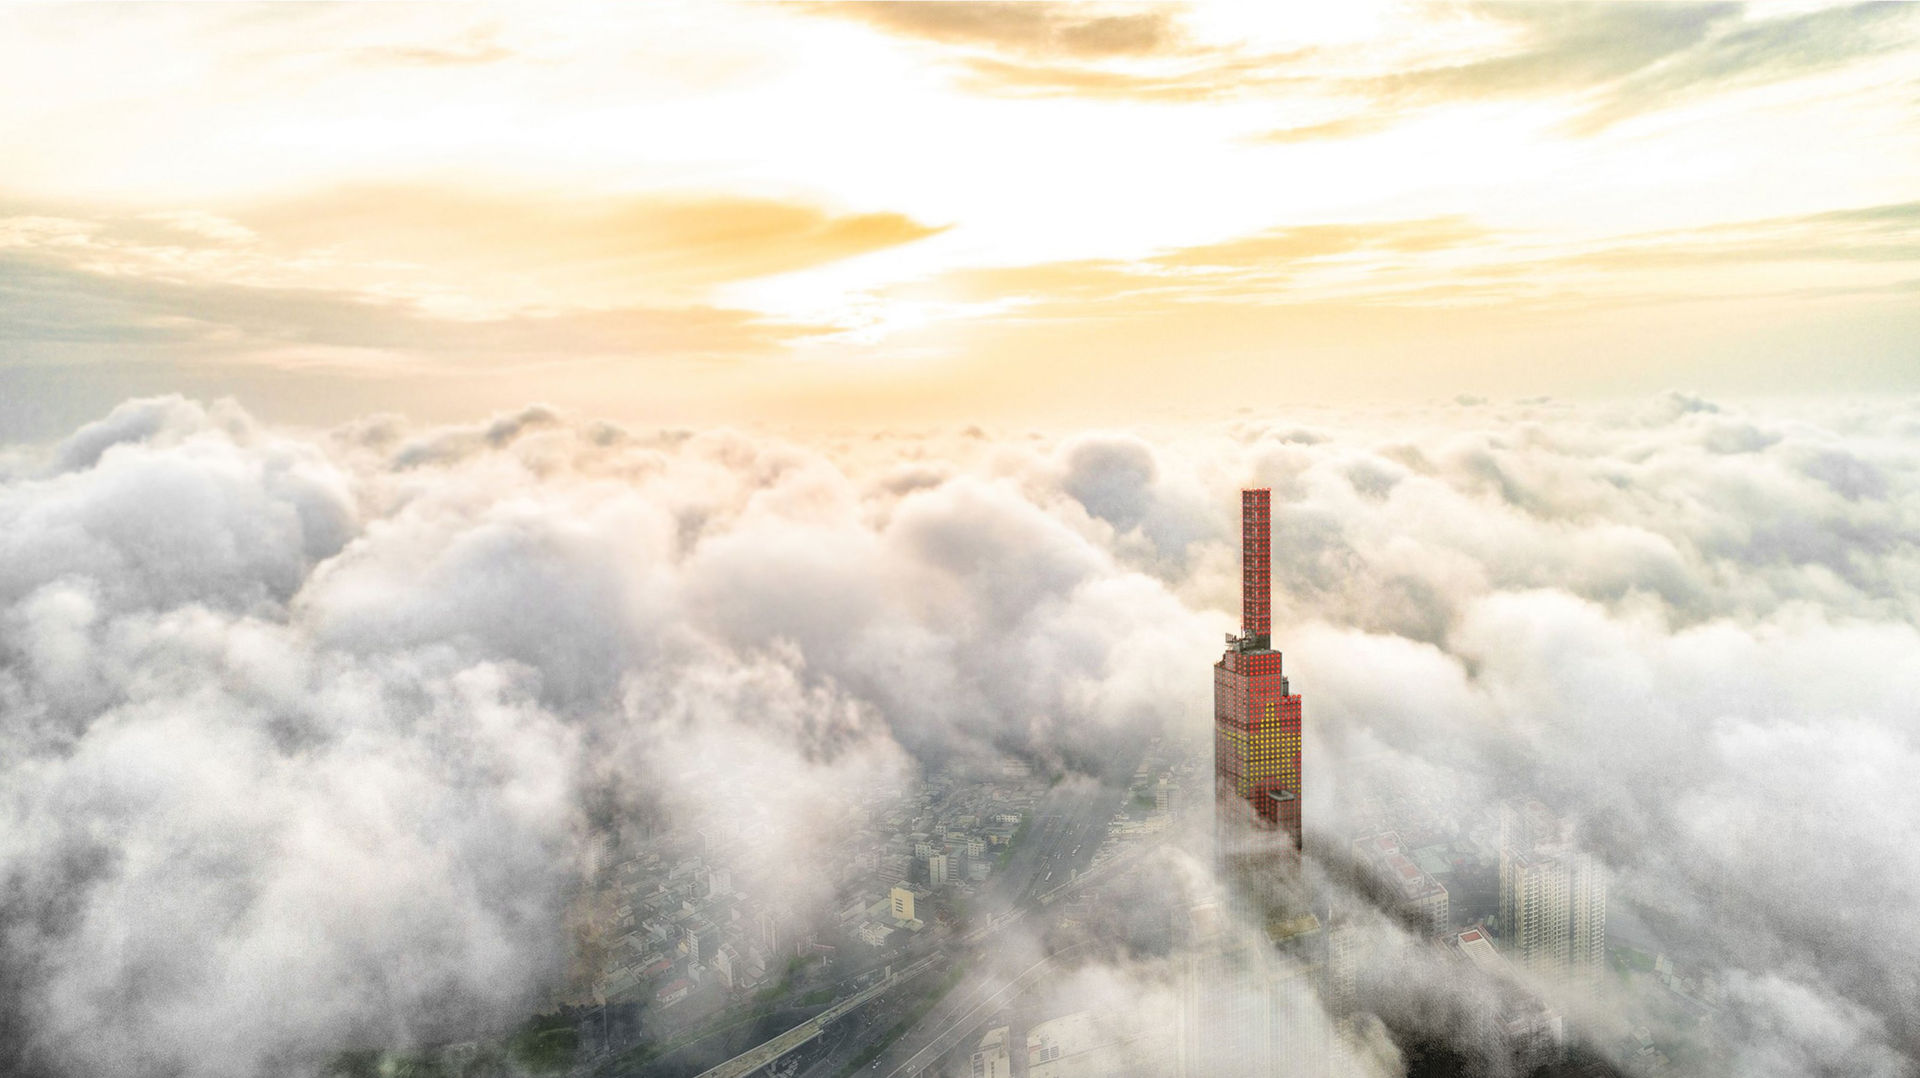 Đài quan sát Landmark 81 SkyView cao nhất Đông Nam Á mang đến trải nghiệm đỉnh cao giữa tầng mây.